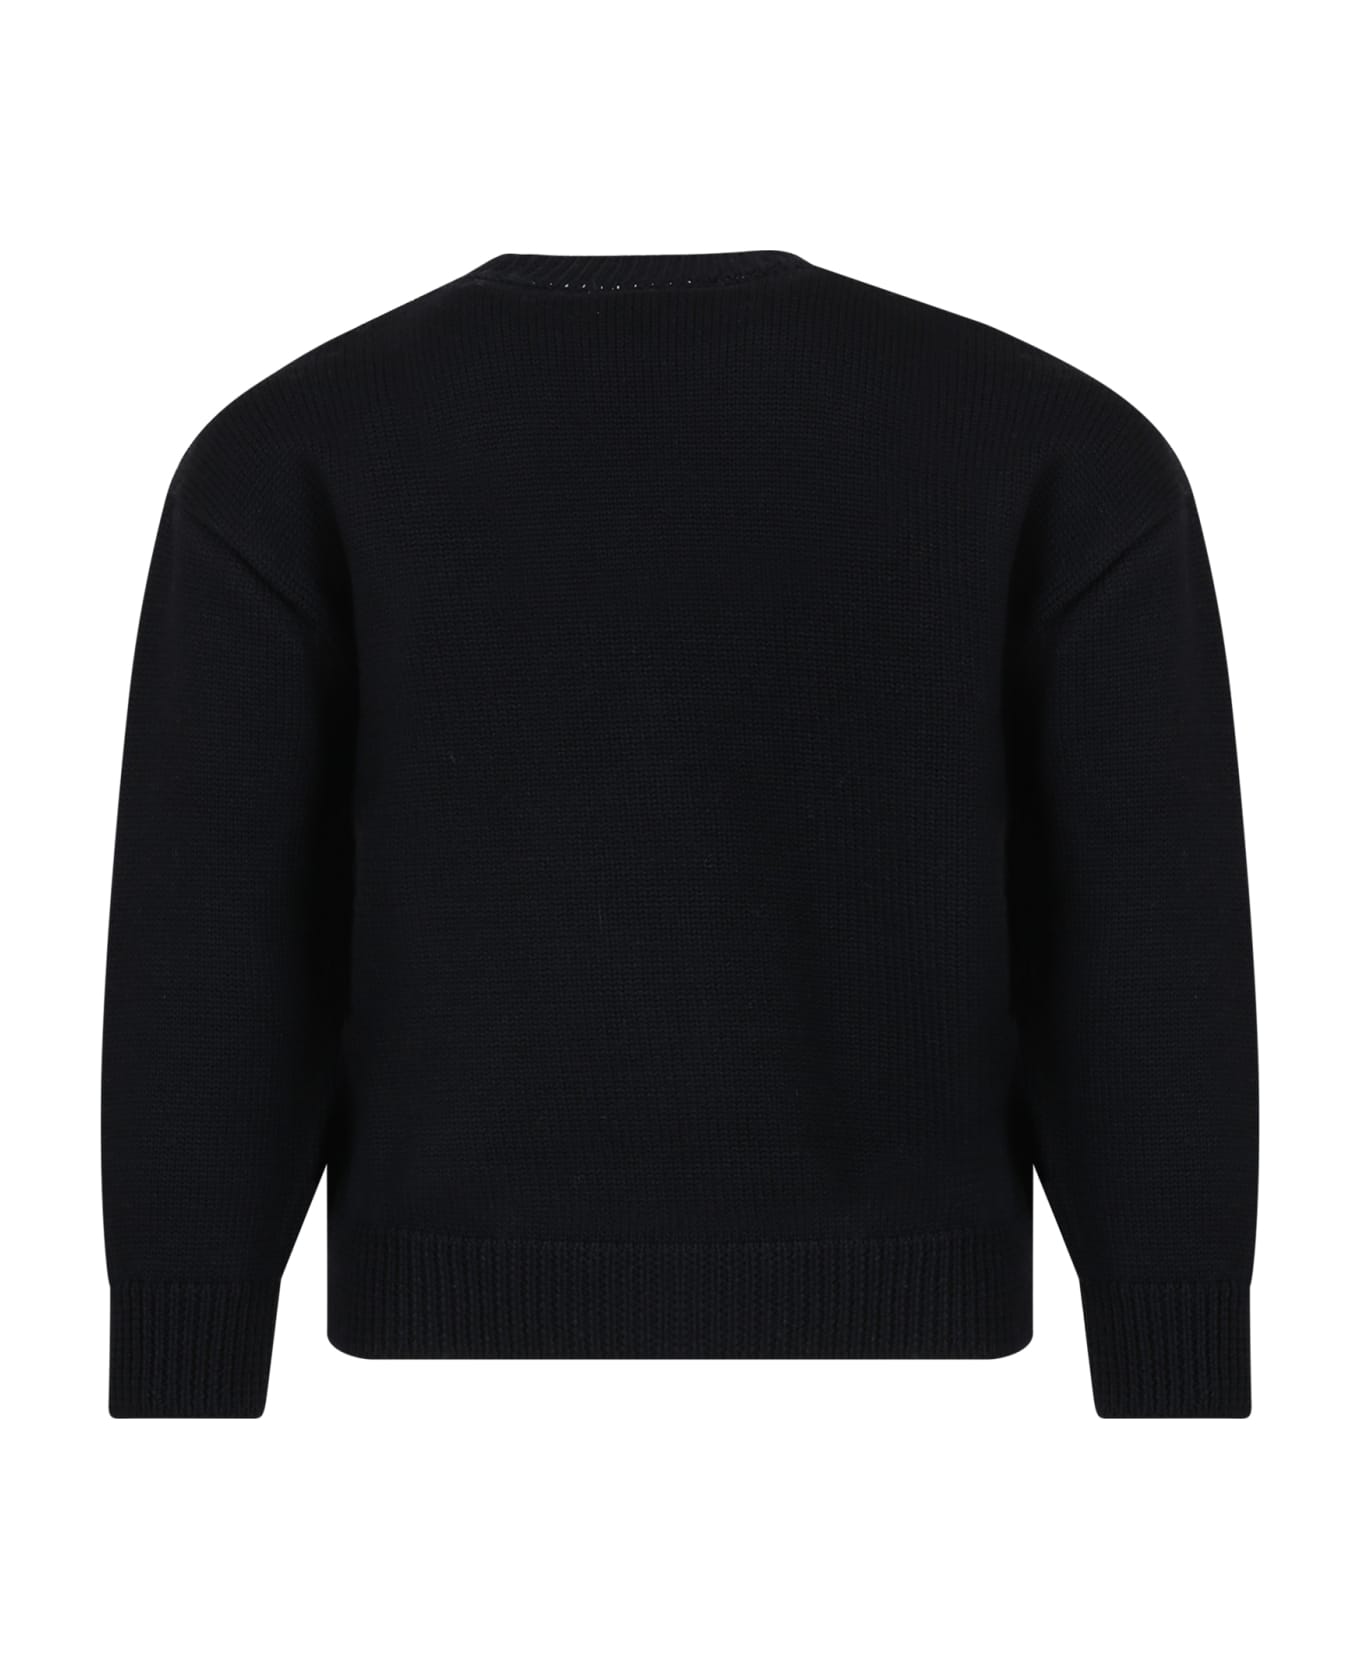 Fendi Black Sweater With Logo For Kids - Black ニットウェア＆スウェットシャツ